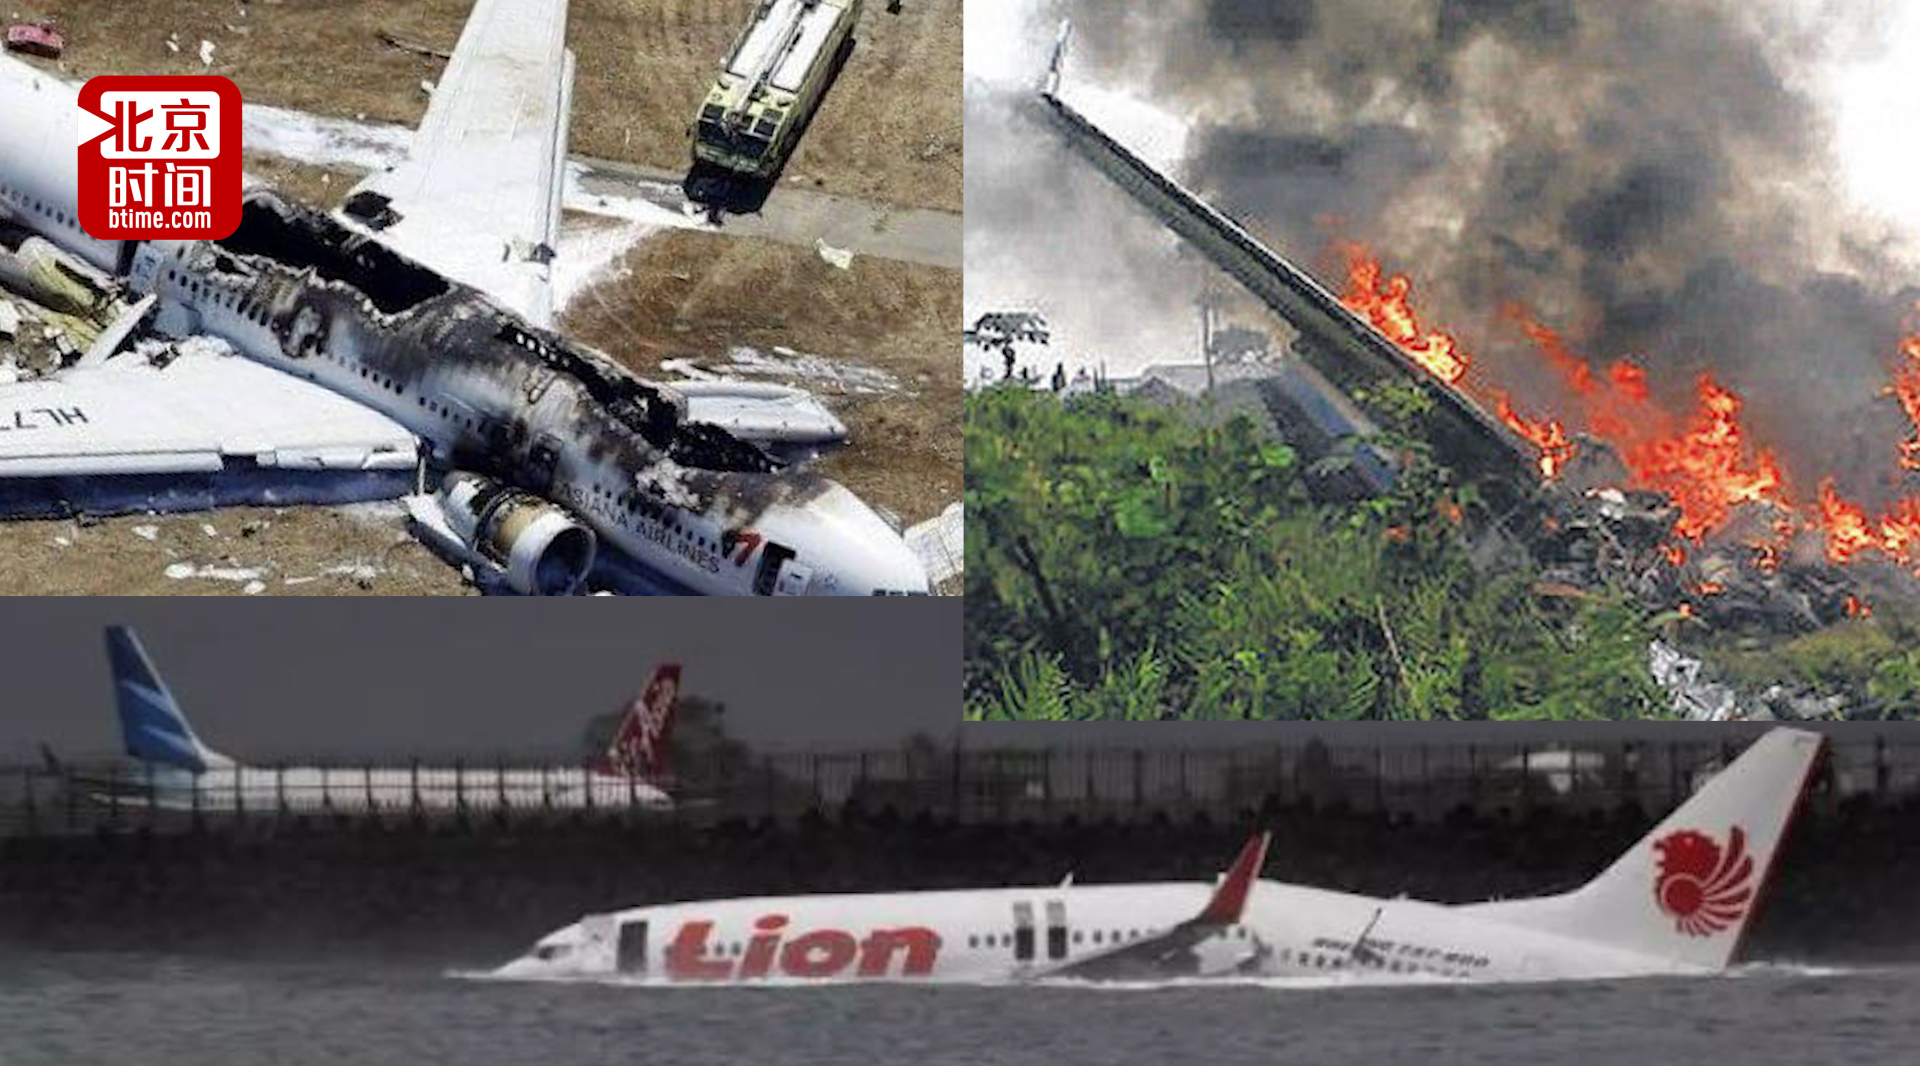 还敢坐廉价航空吗?印尼狮航19年14次事故10大最危险航空公司之一